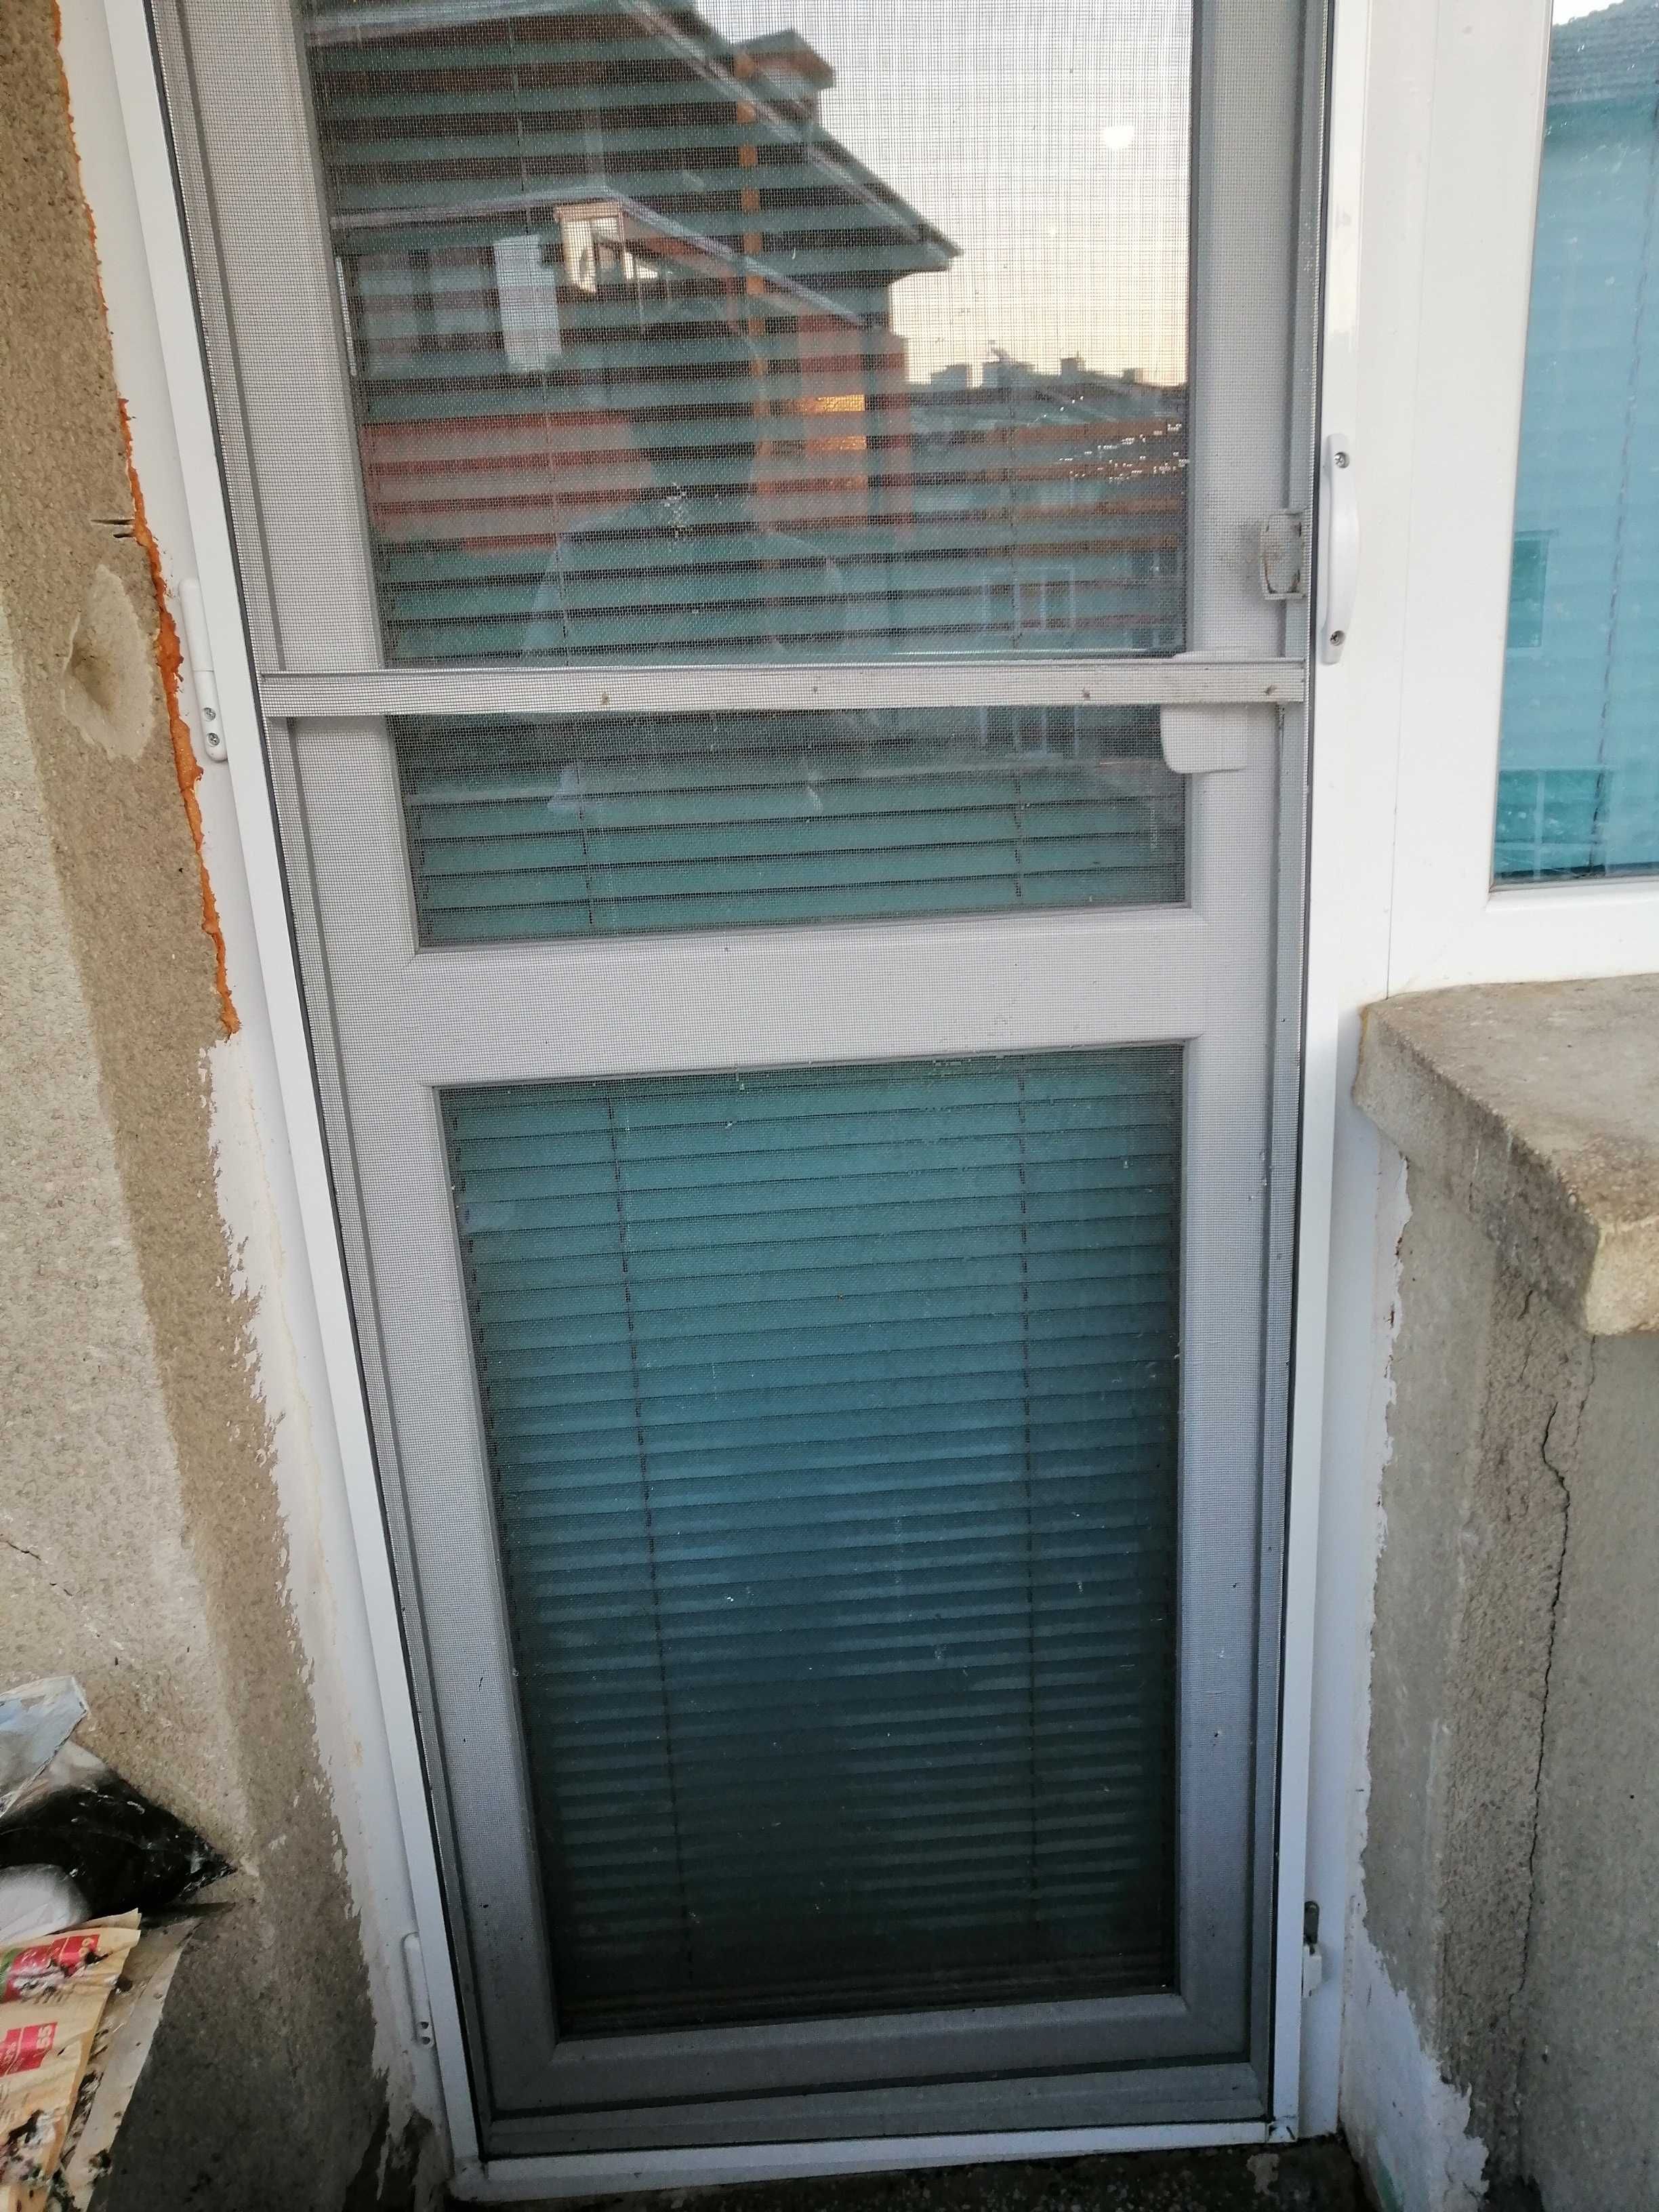 PVC врата с каса височ. 220 см, шир.63,5 см